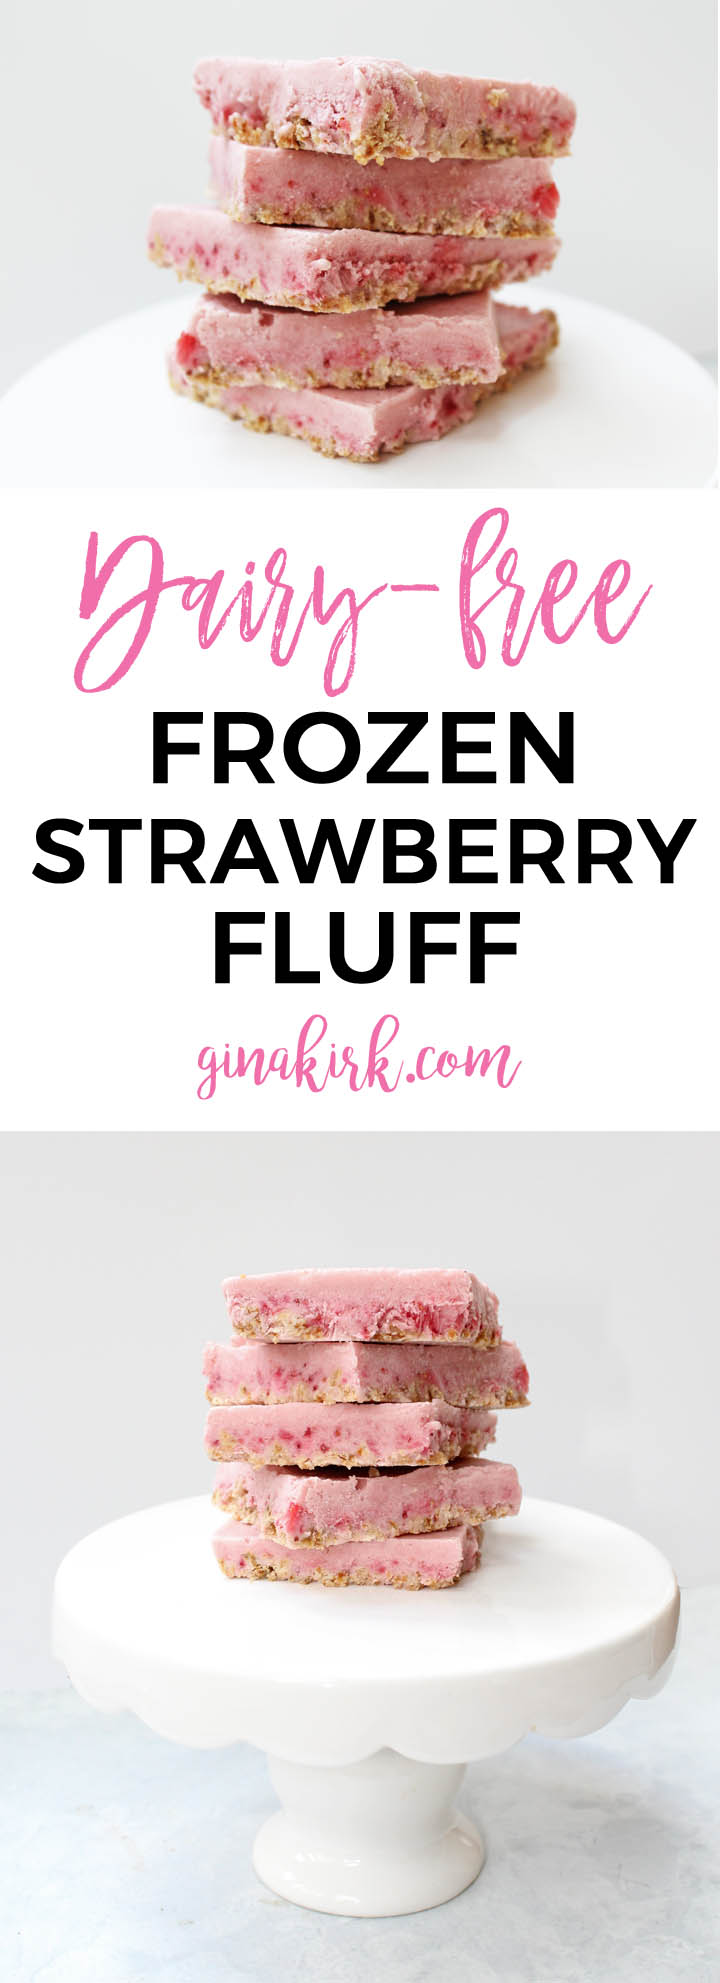 Frozen strawberry dessert recipe | Gluten free, dairy free frozen treat | Summer strawberry dessert ideas GinaKirk.com